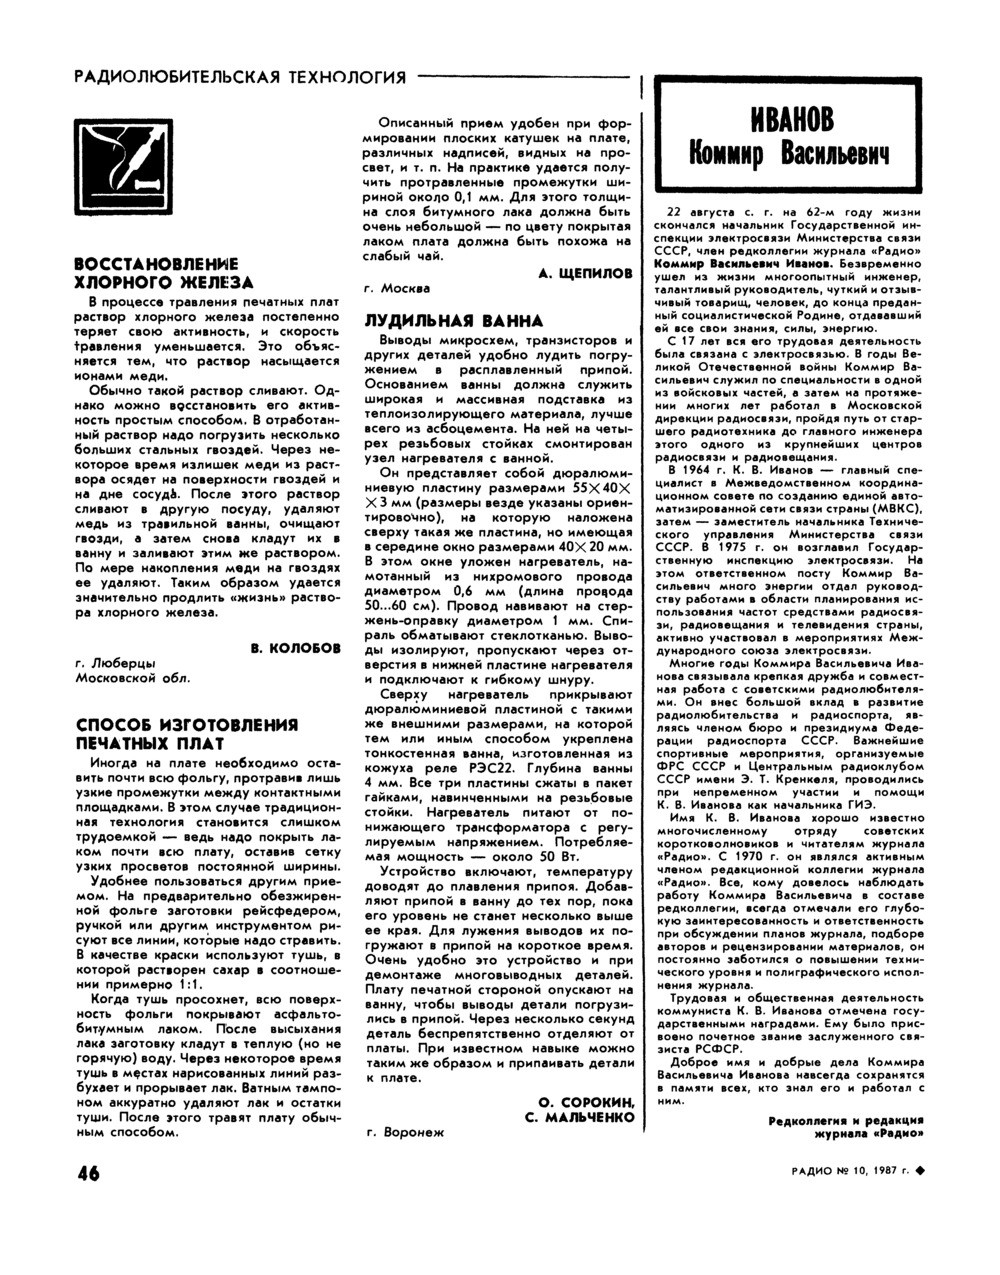 Стр. 46 журнала «Радио» № 10 за 1987 год